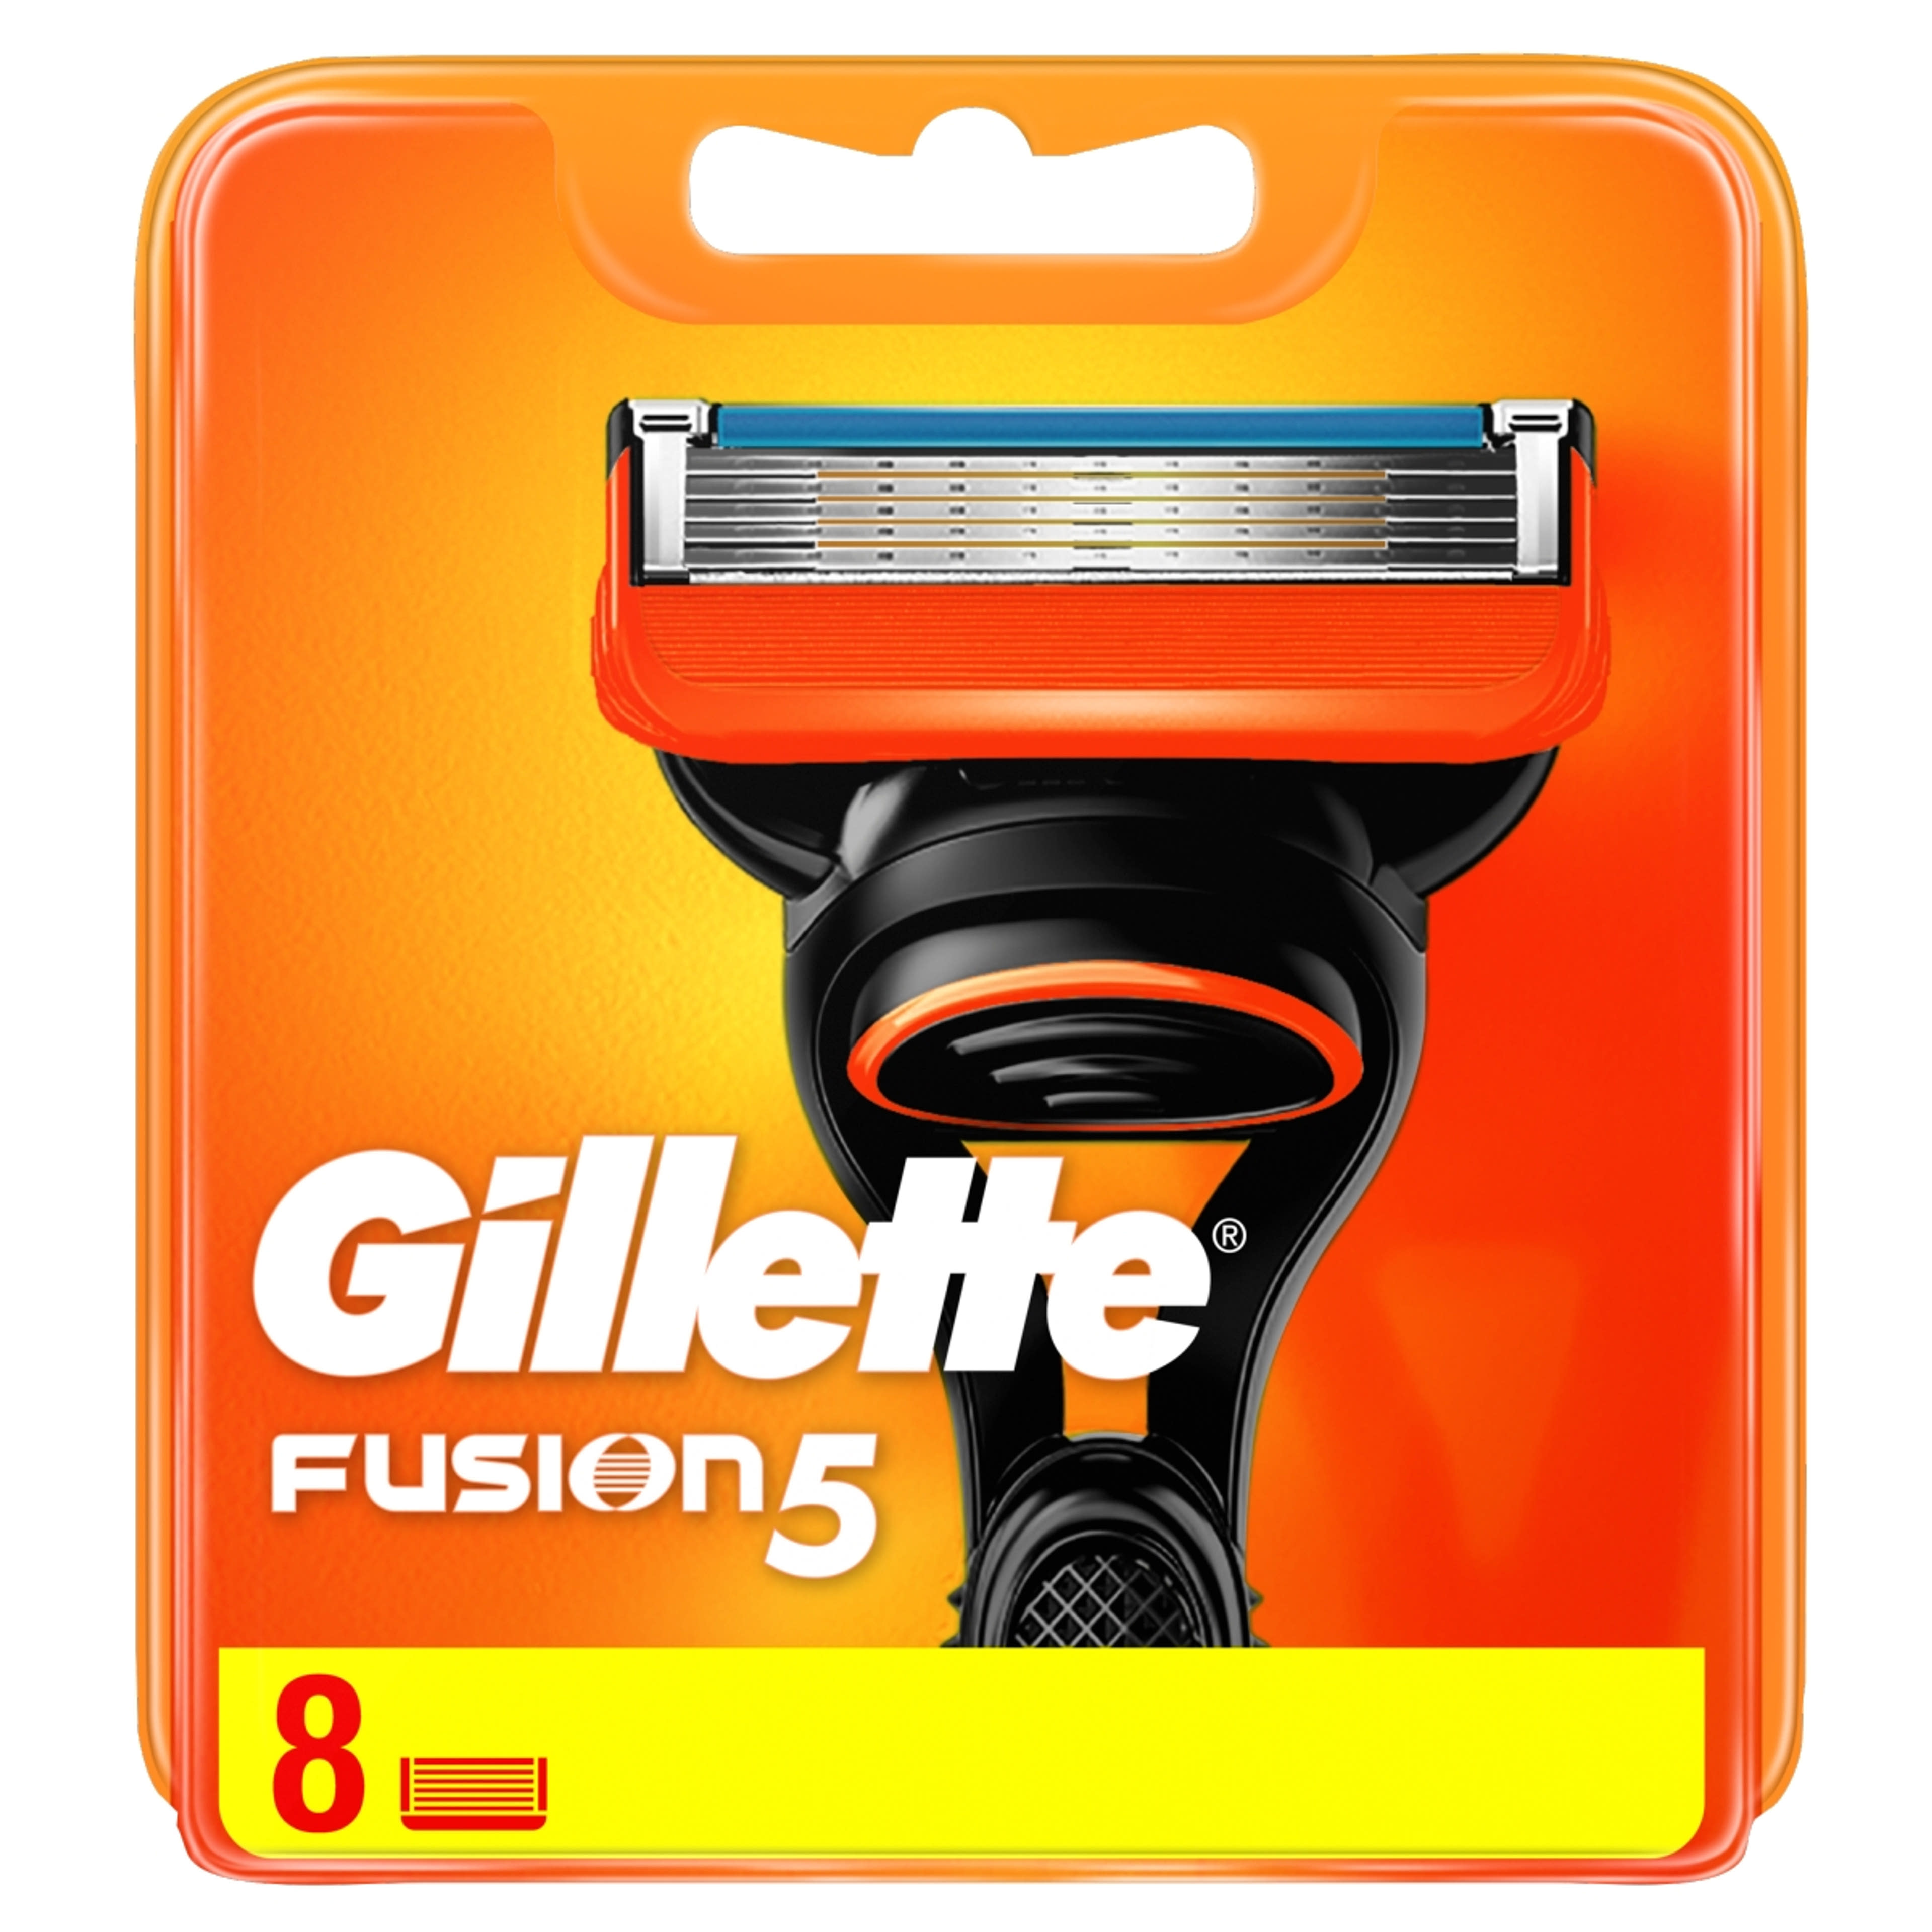 Gillette Fusion borotvabetét - 8 db-1